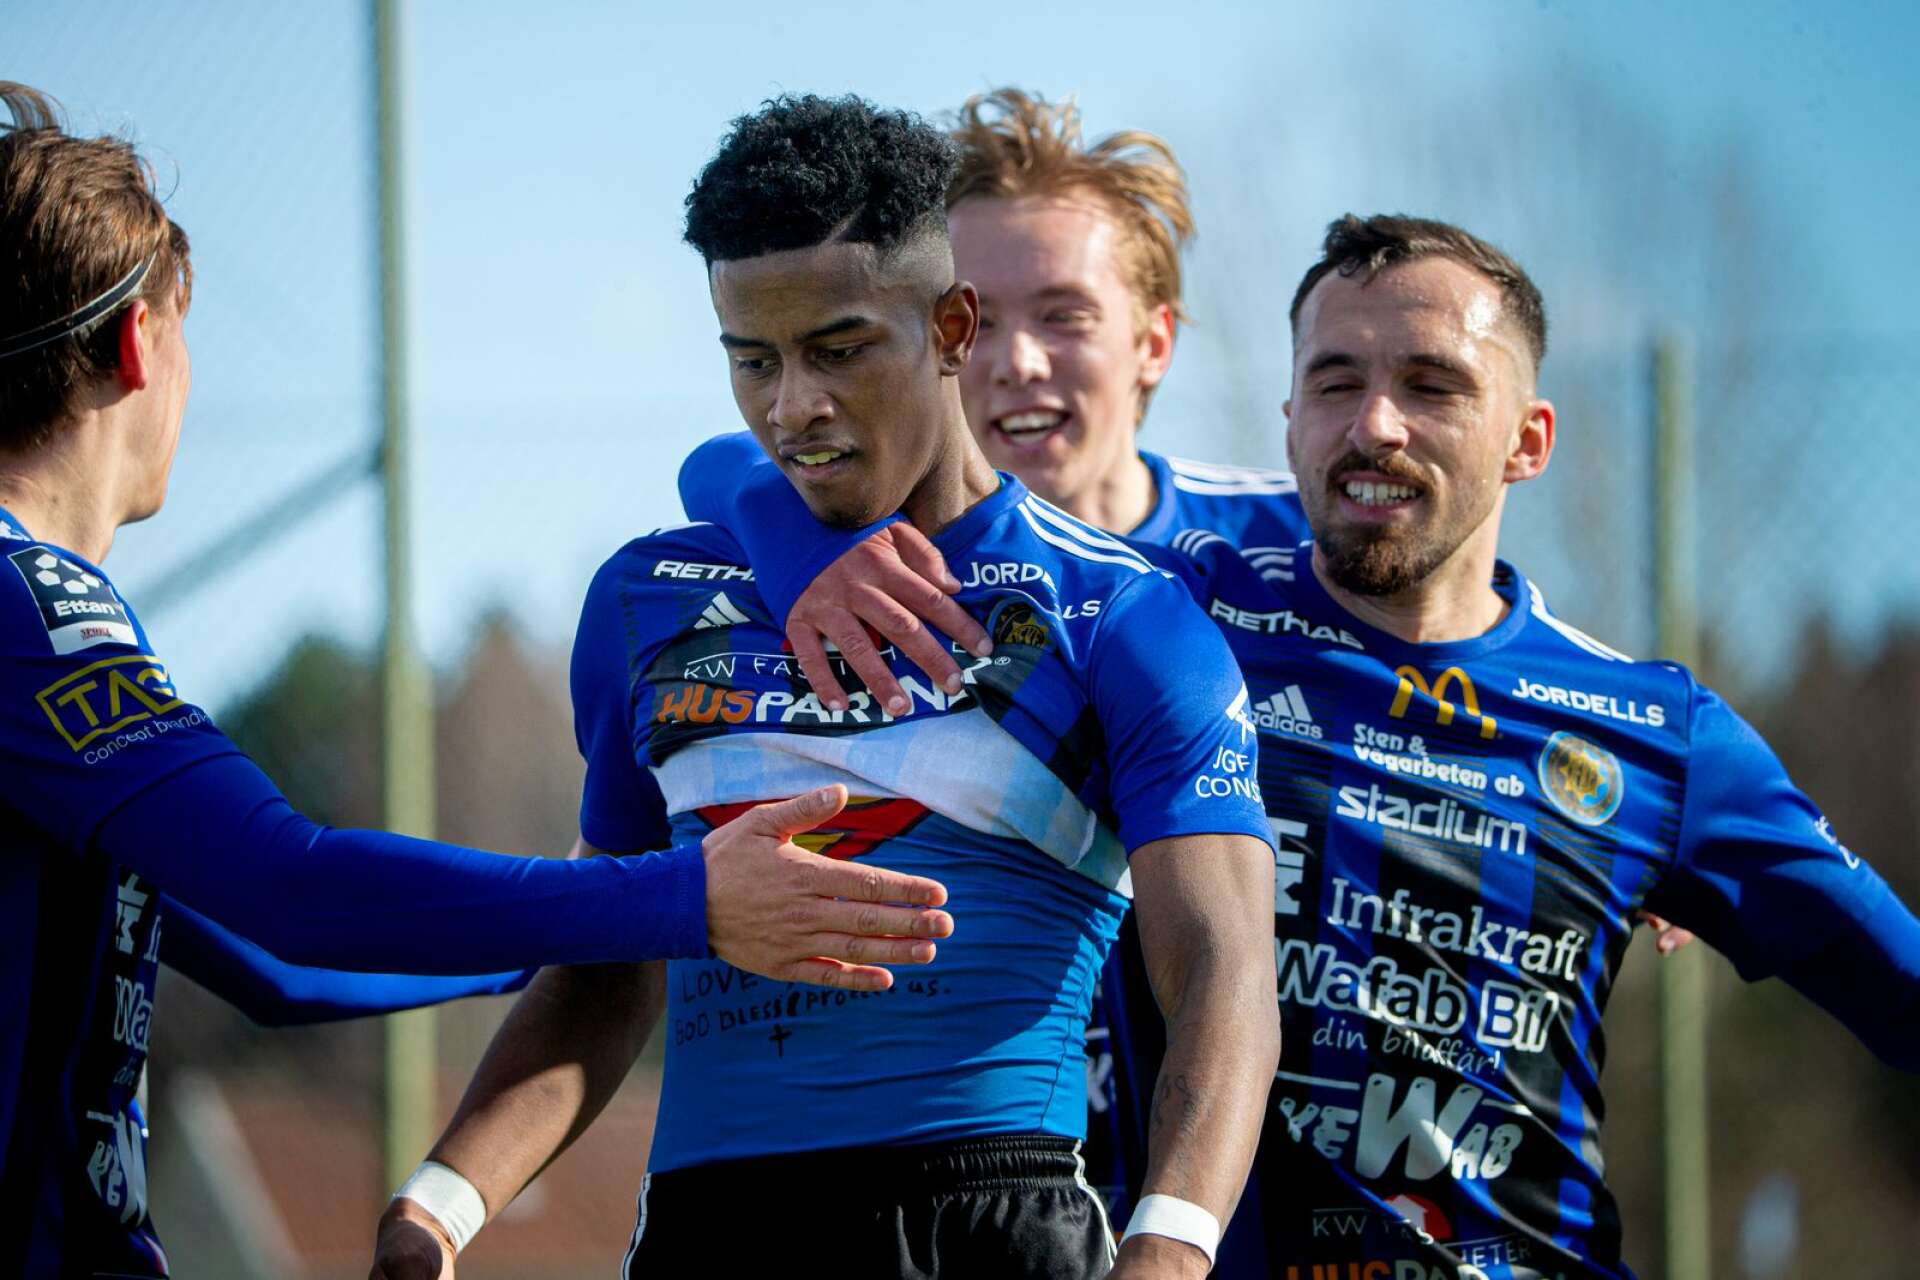 Chovanie Amatkarijo från Nederländerna trivs i Karlstad Fotboll.